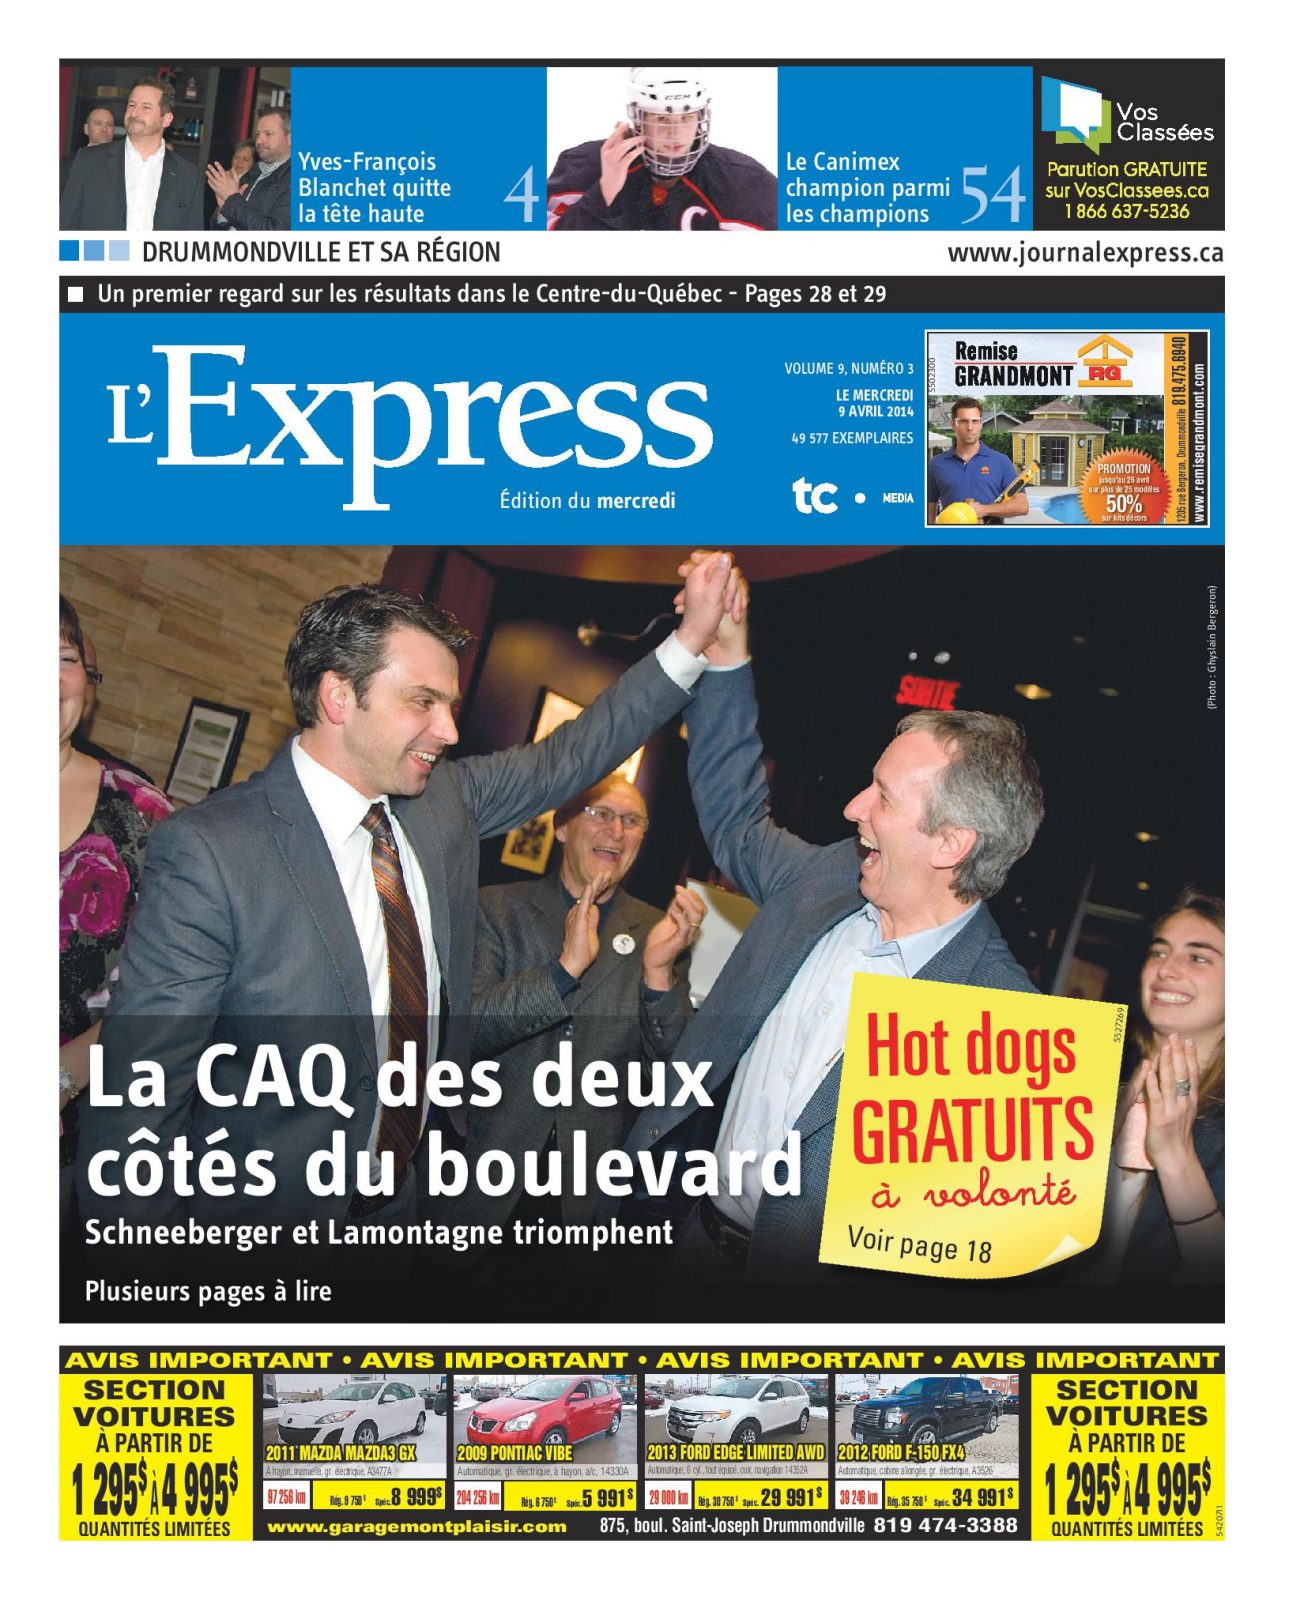 La une de L’Express du 9 avril 2014